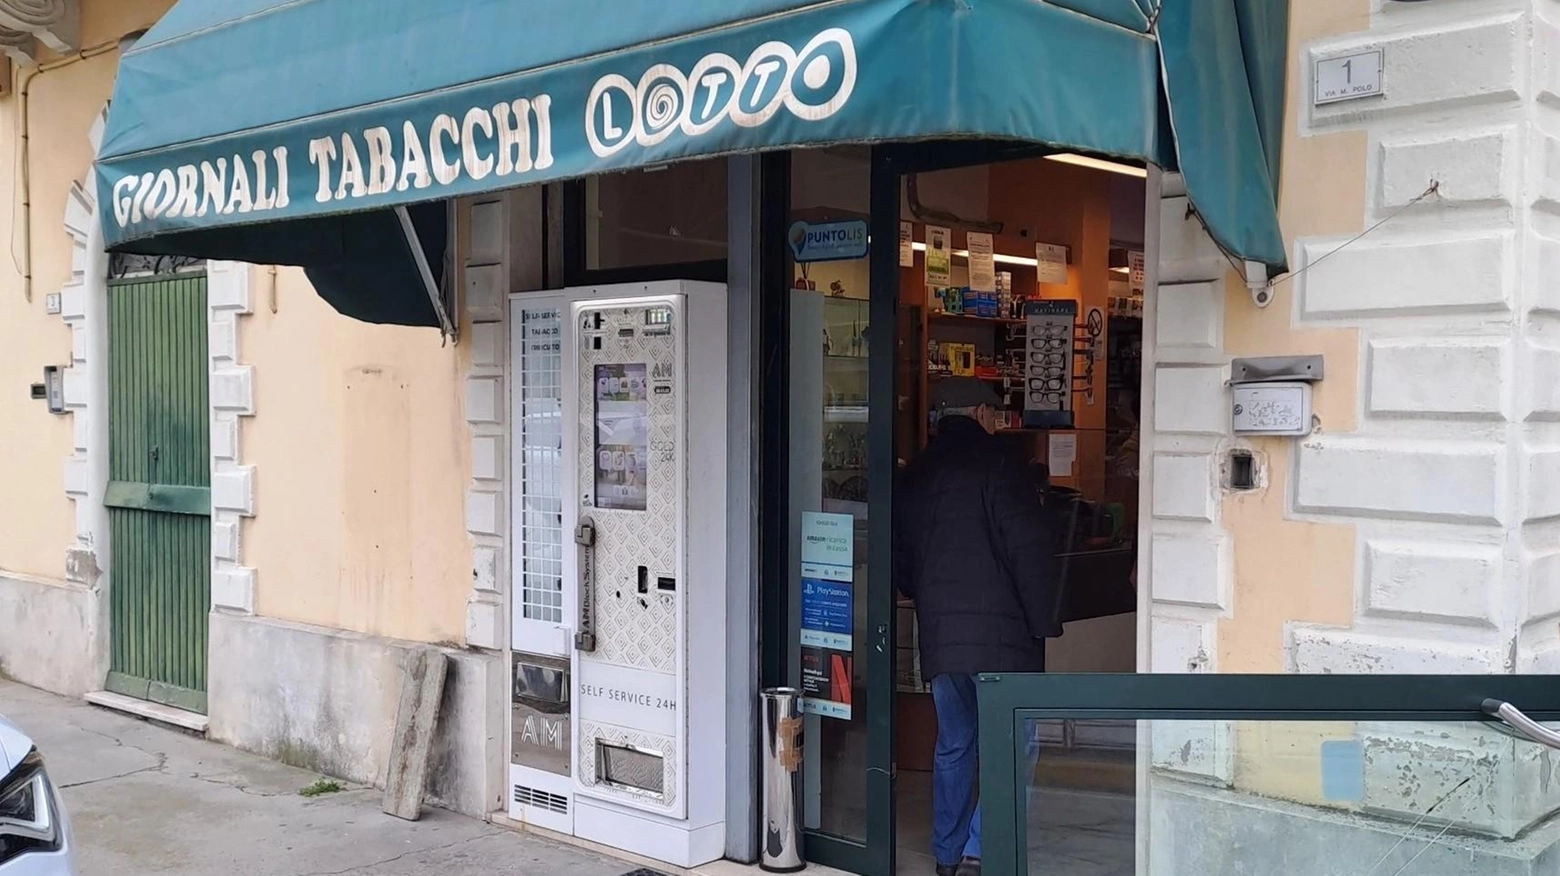 Furto in una tabaccheria a Genova: due individui armati hanno forzato la serranda e rubato gratta e vinci e sigarette. Fuggiti prima dell'arrivo dei carabinieri.